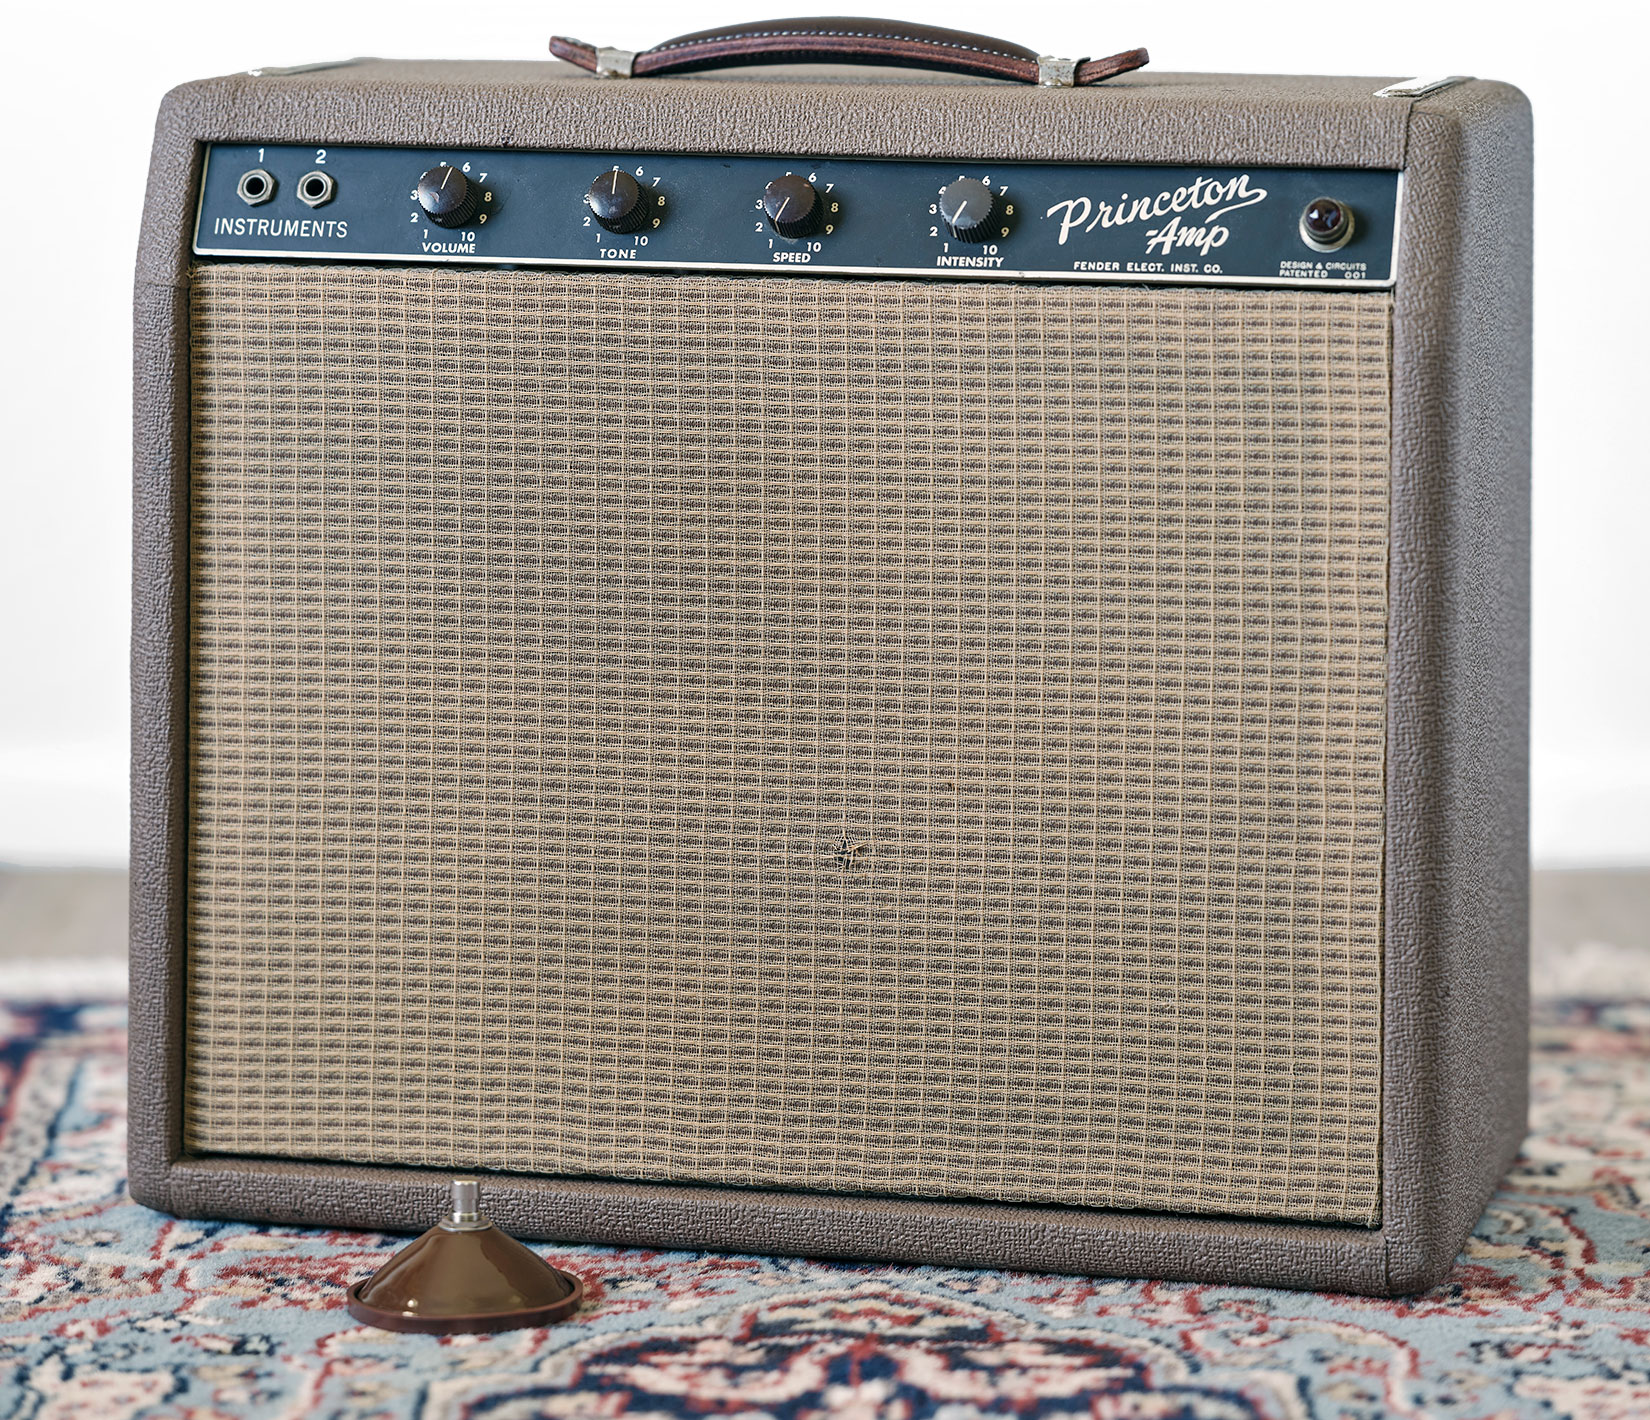 Brown Panel Fender Princeton 1962